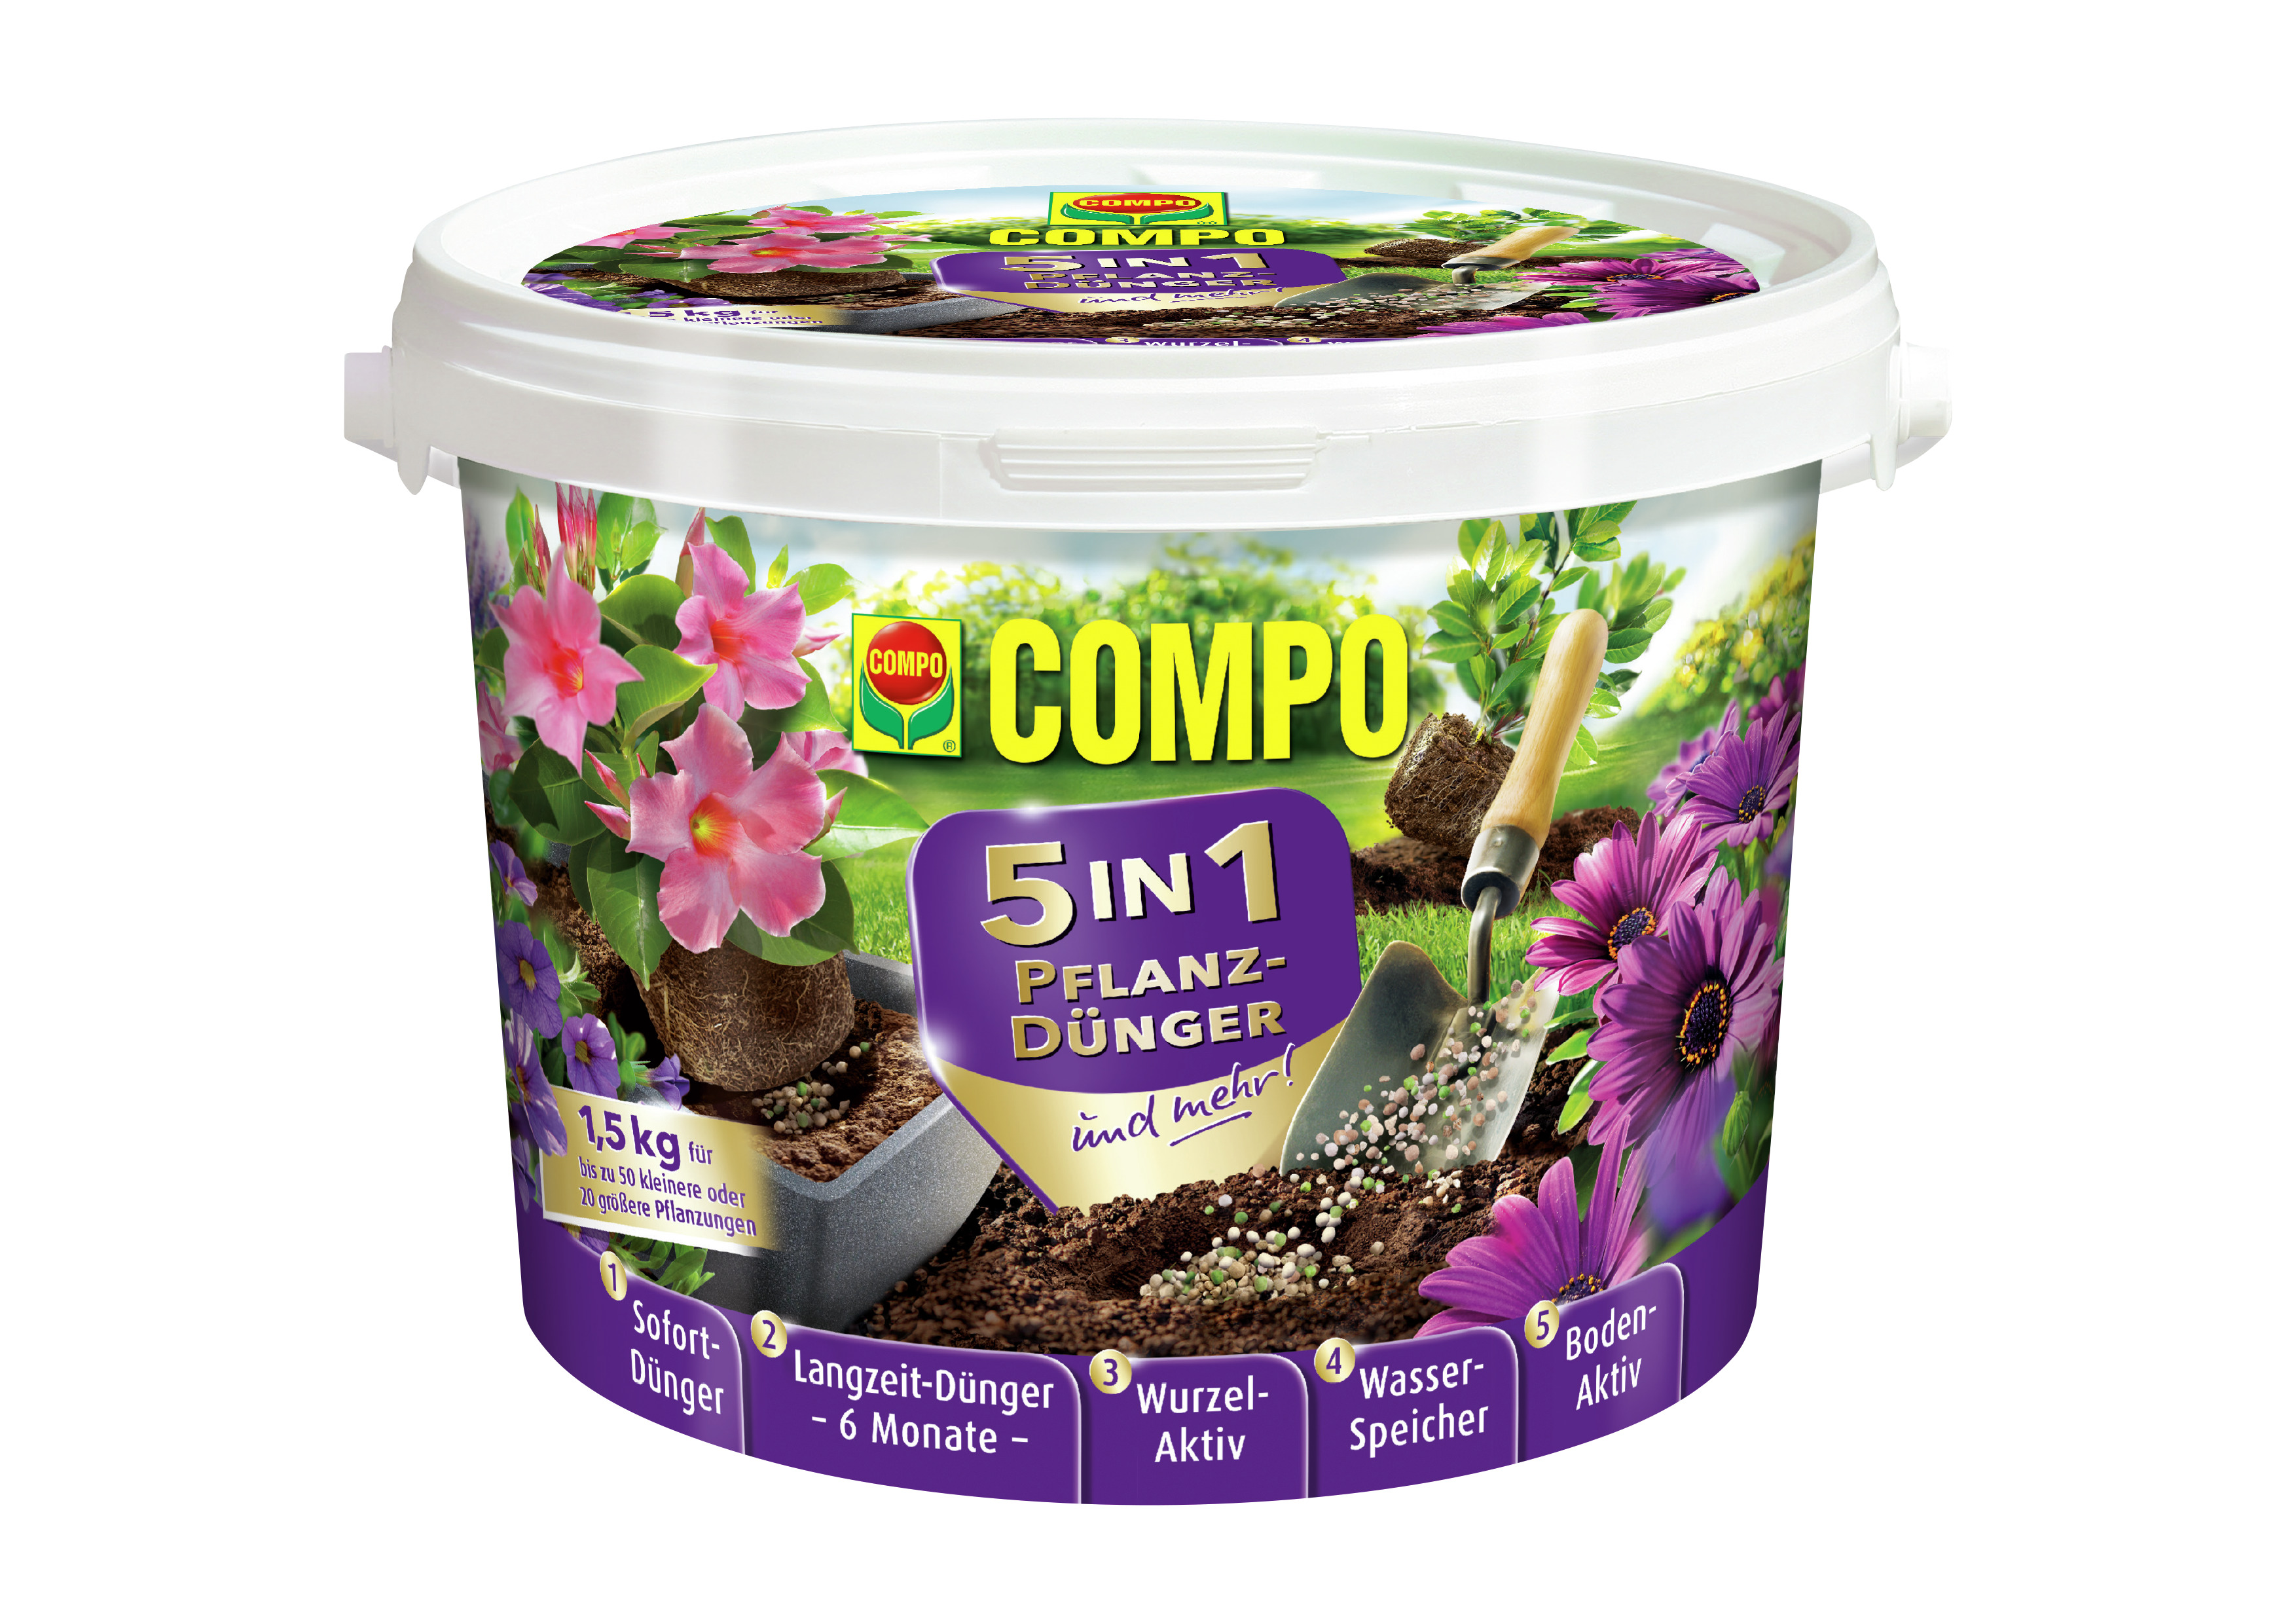 COMPO COMPO 5in1 Pflanzdünger und mehr 1,5kg Compo EREG